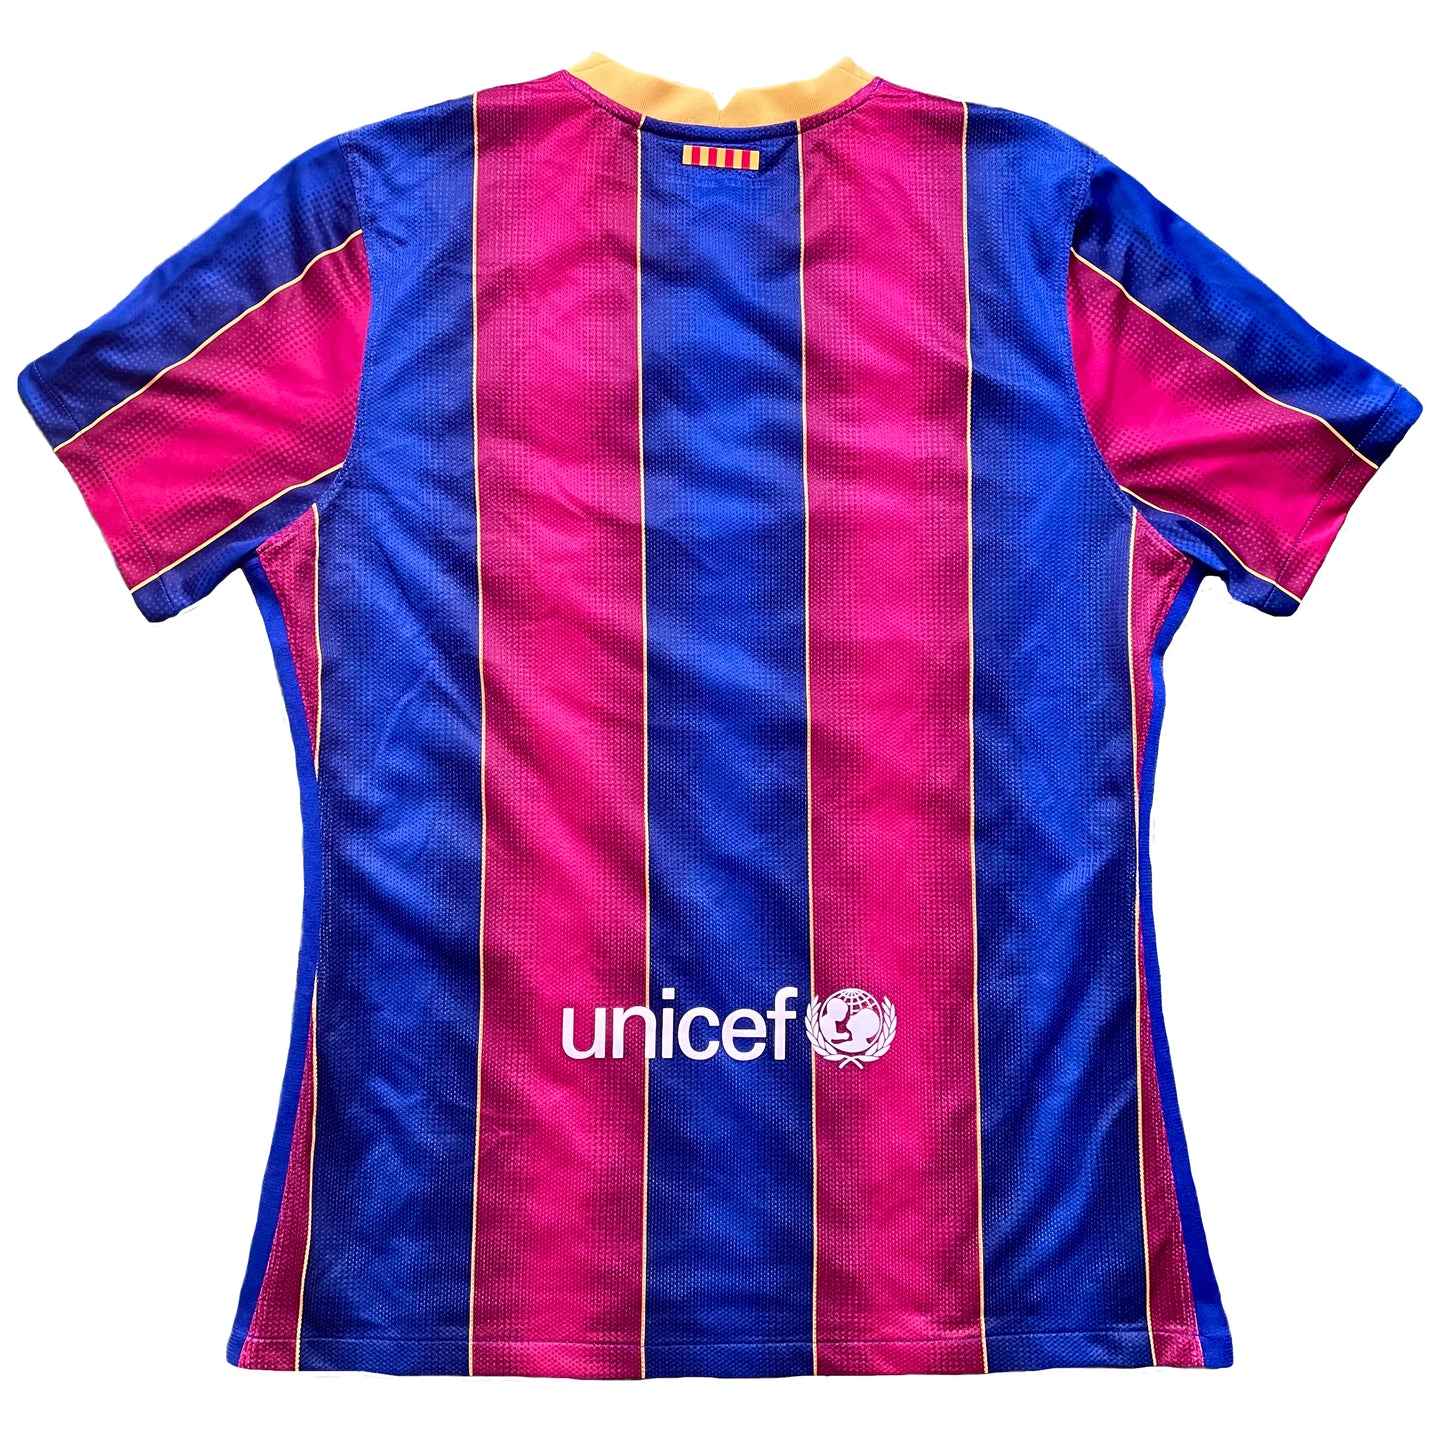 <tc>2020-2021 FC Barcelona camiseta local player issue de categor&iacute;as inferiores (XL)</tc>